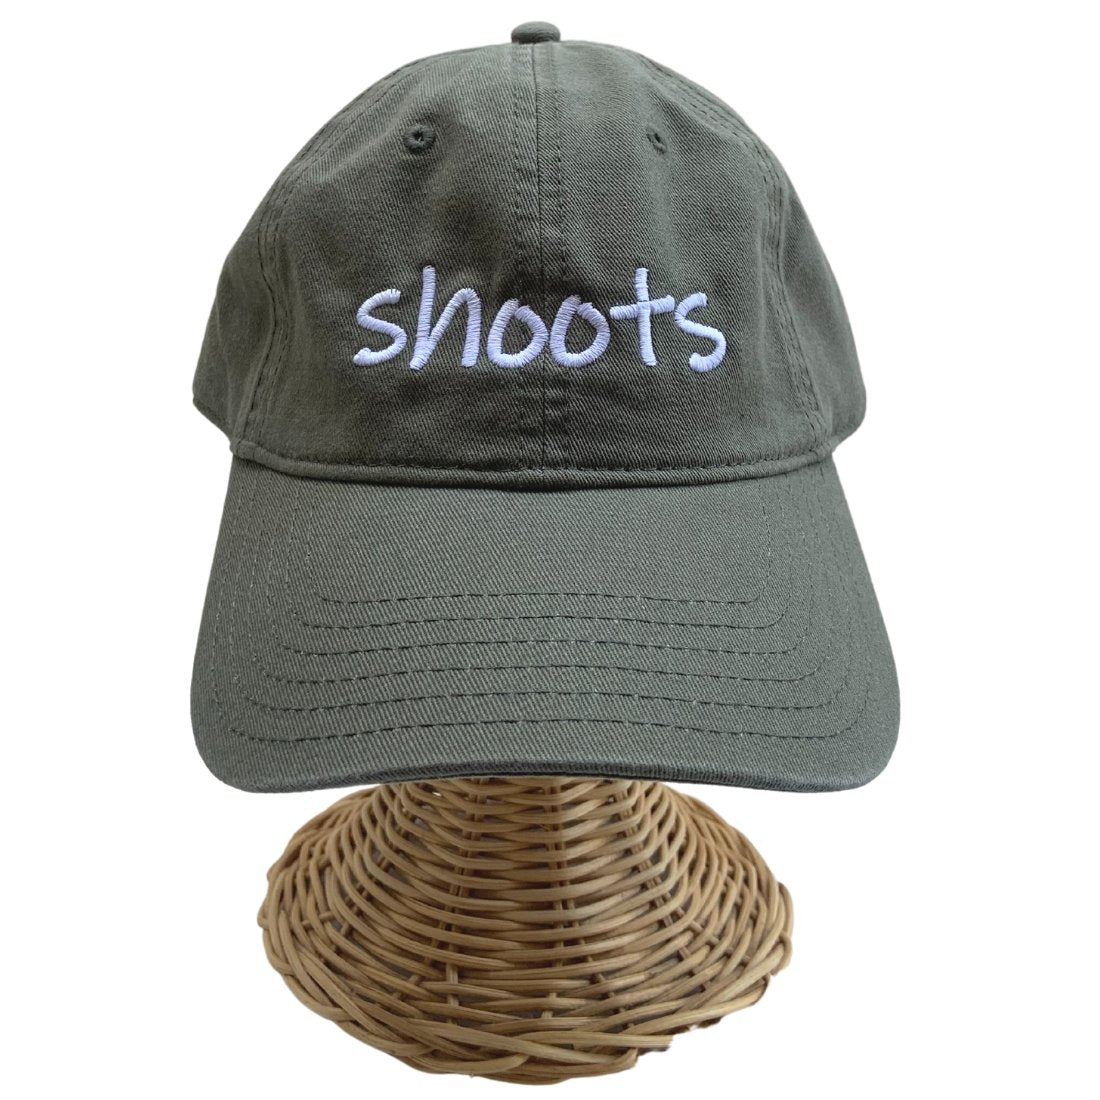 Dad Hat Shoots Global Village Kailua Boutique